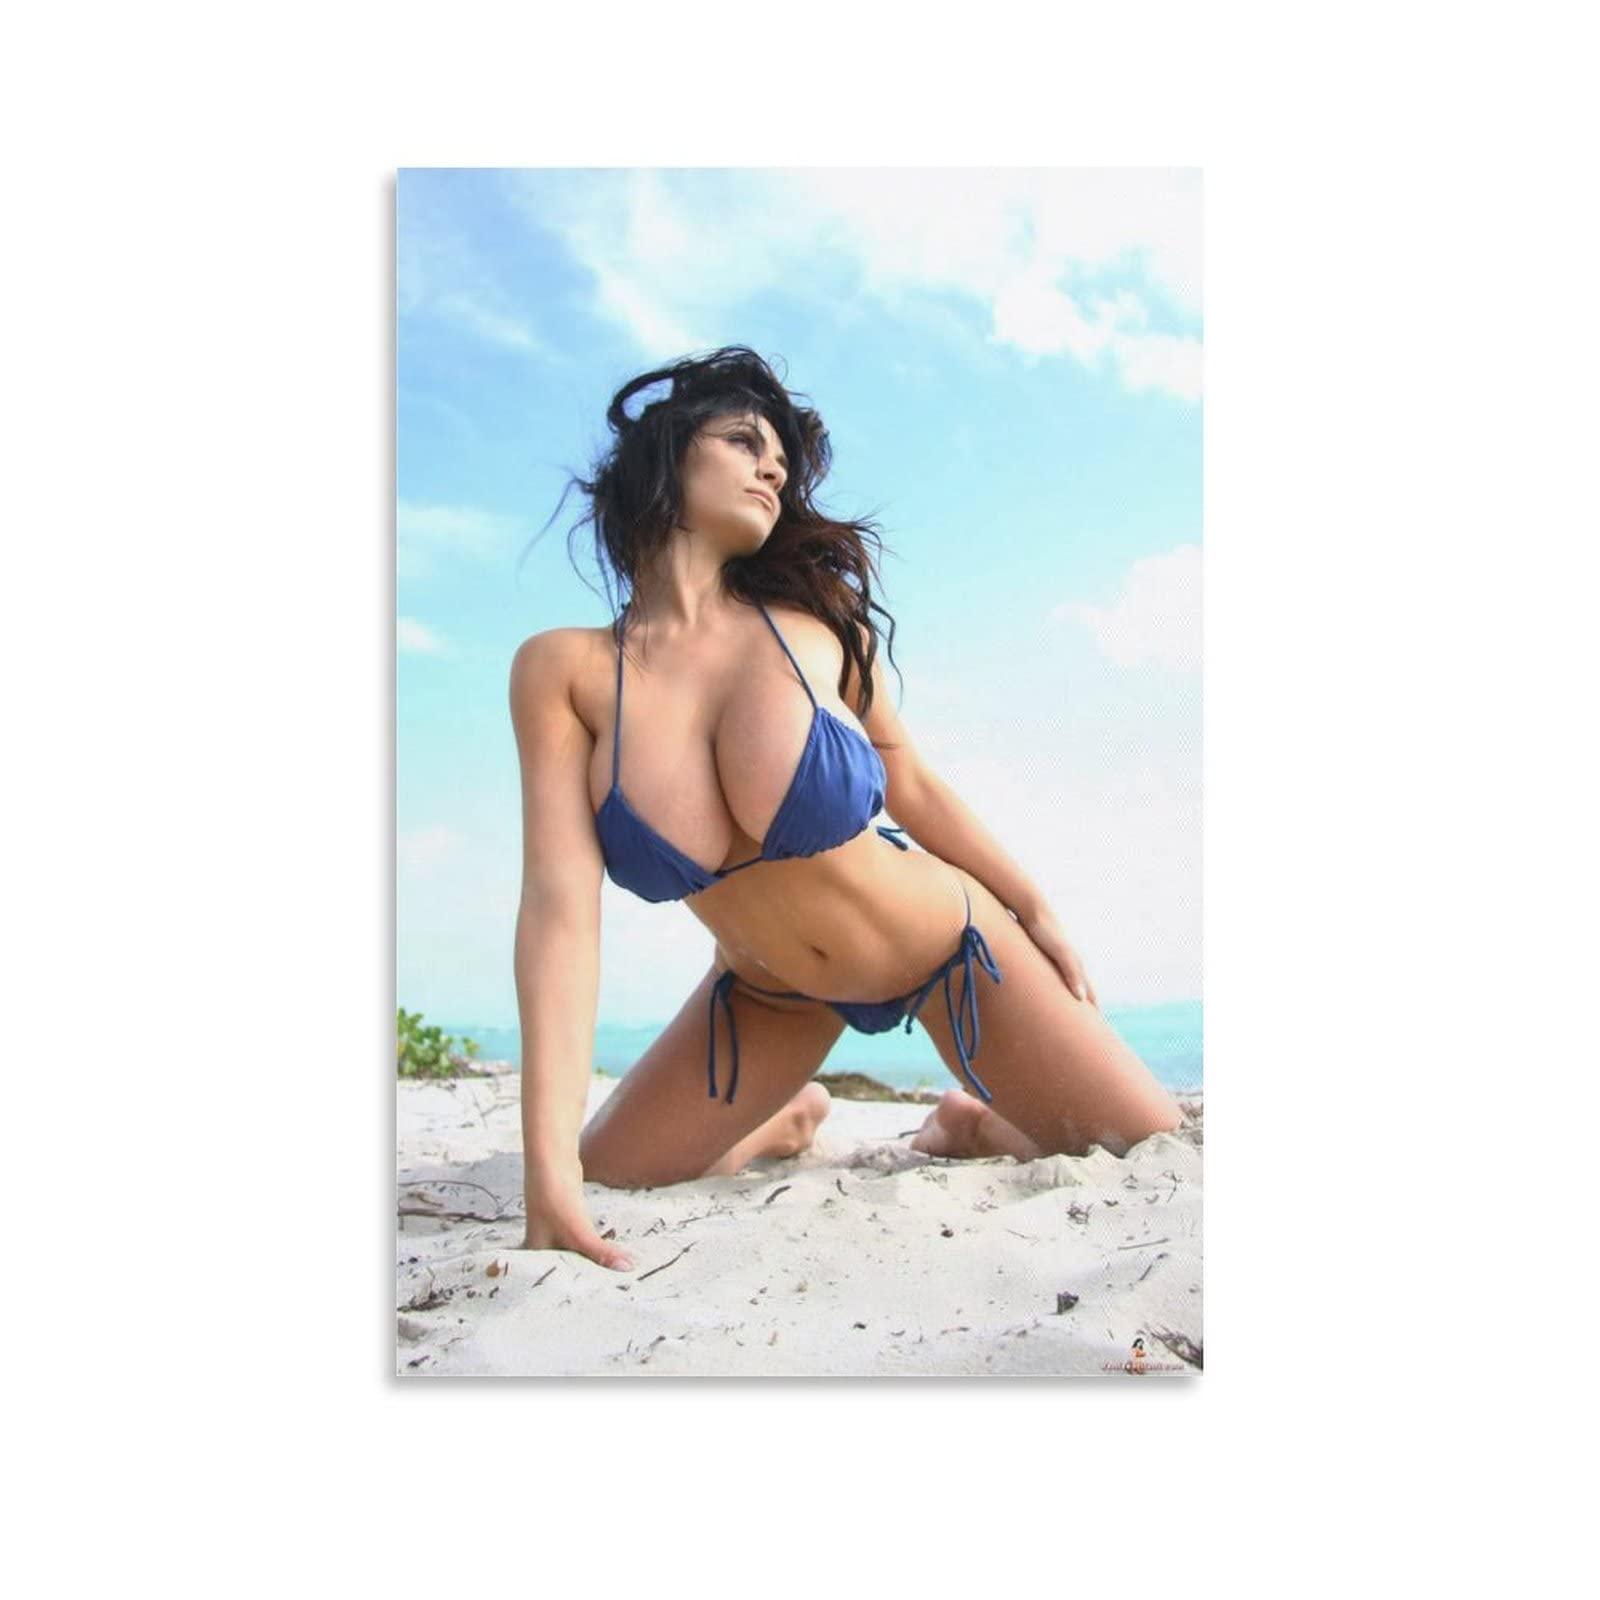 brice chase share denise milani blue bikini photos